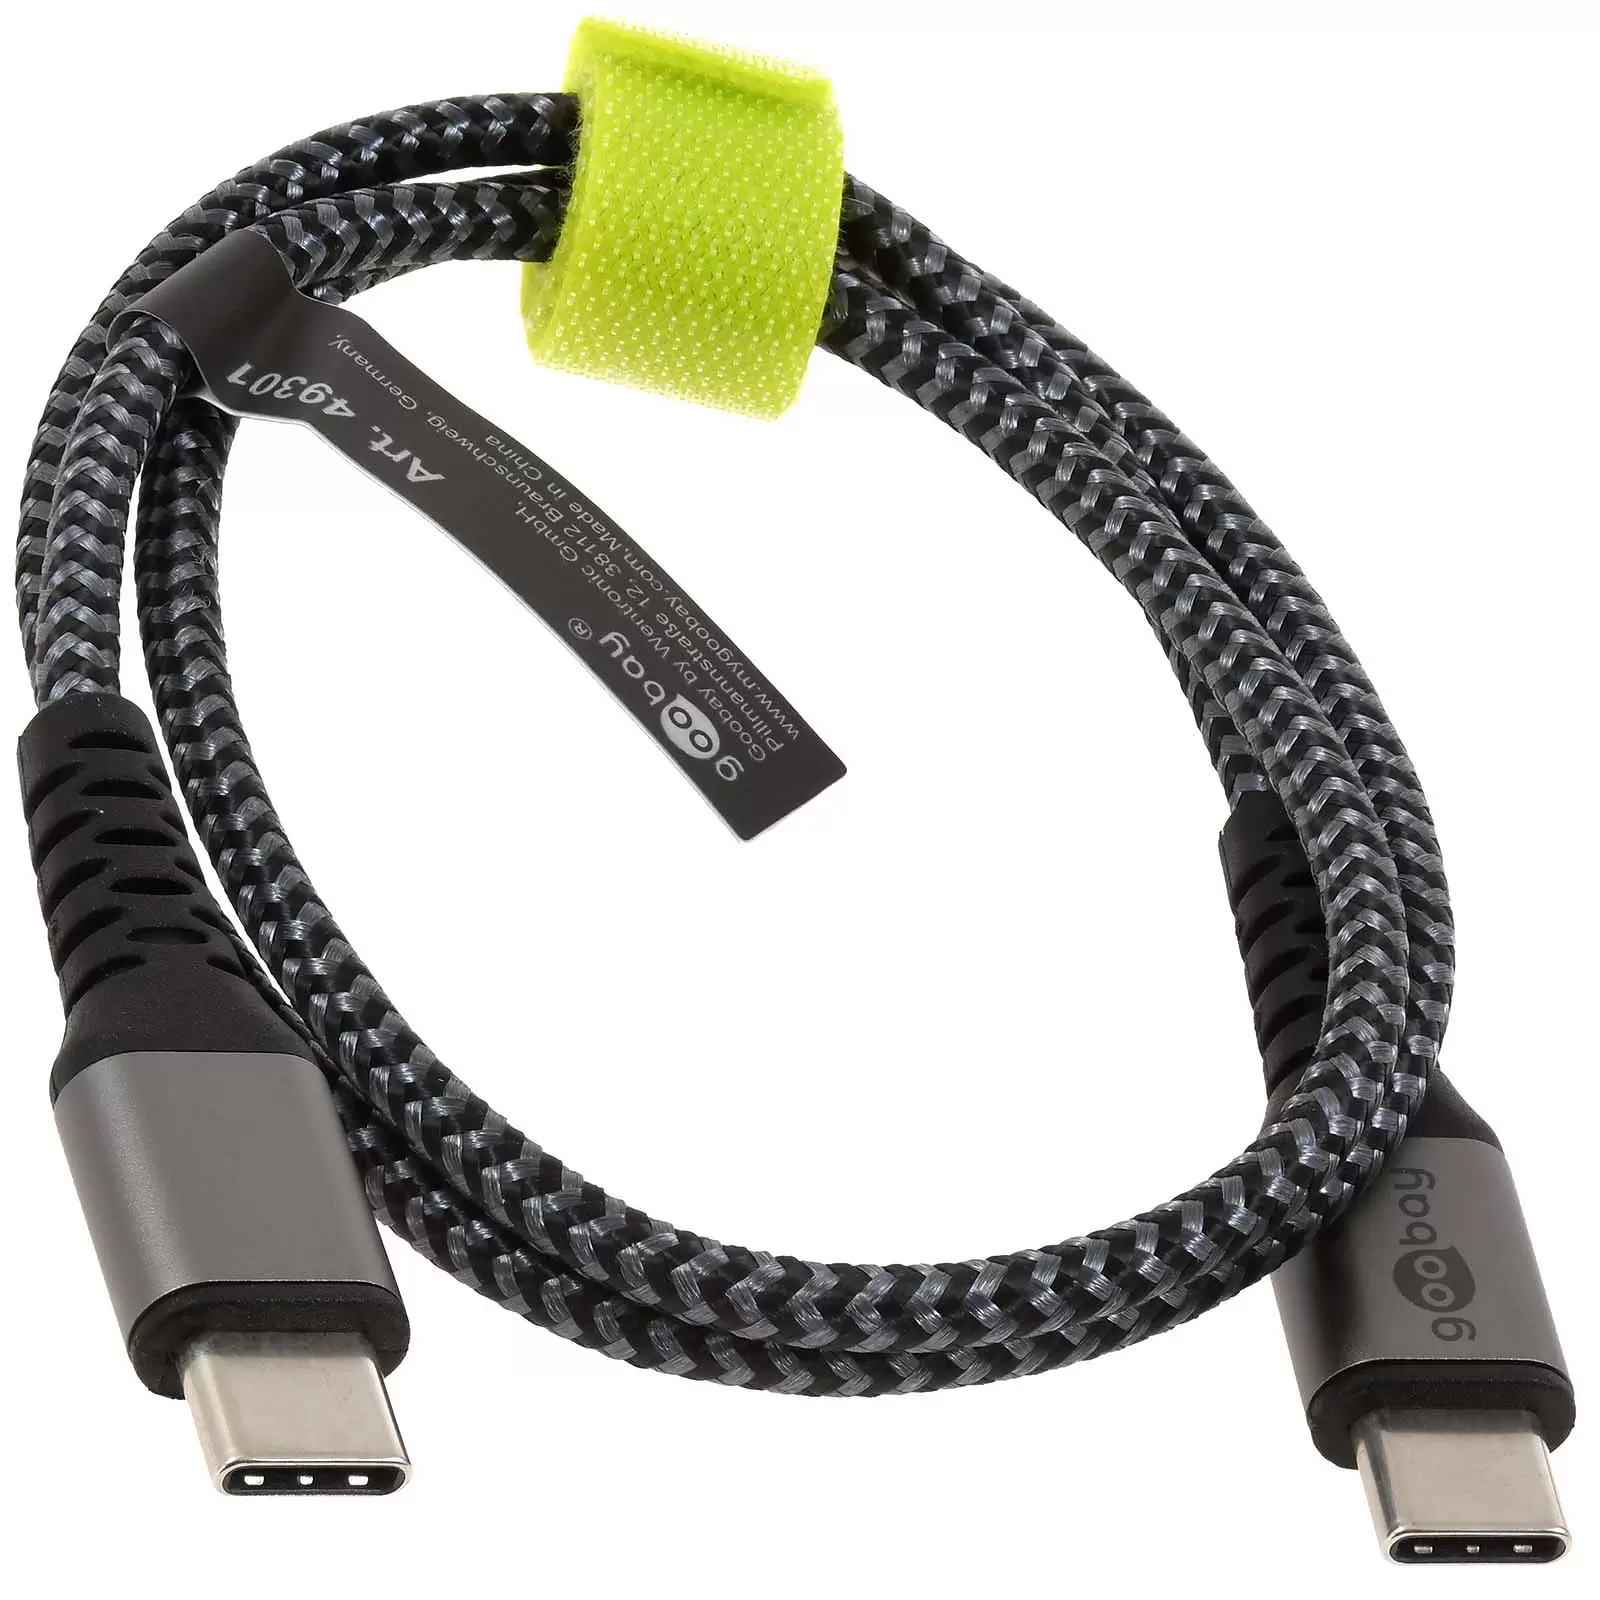 USB-C-auf-USB-C Textilkabel mit Metallsteckern spacegrau/silber, 0,5 m, 49301